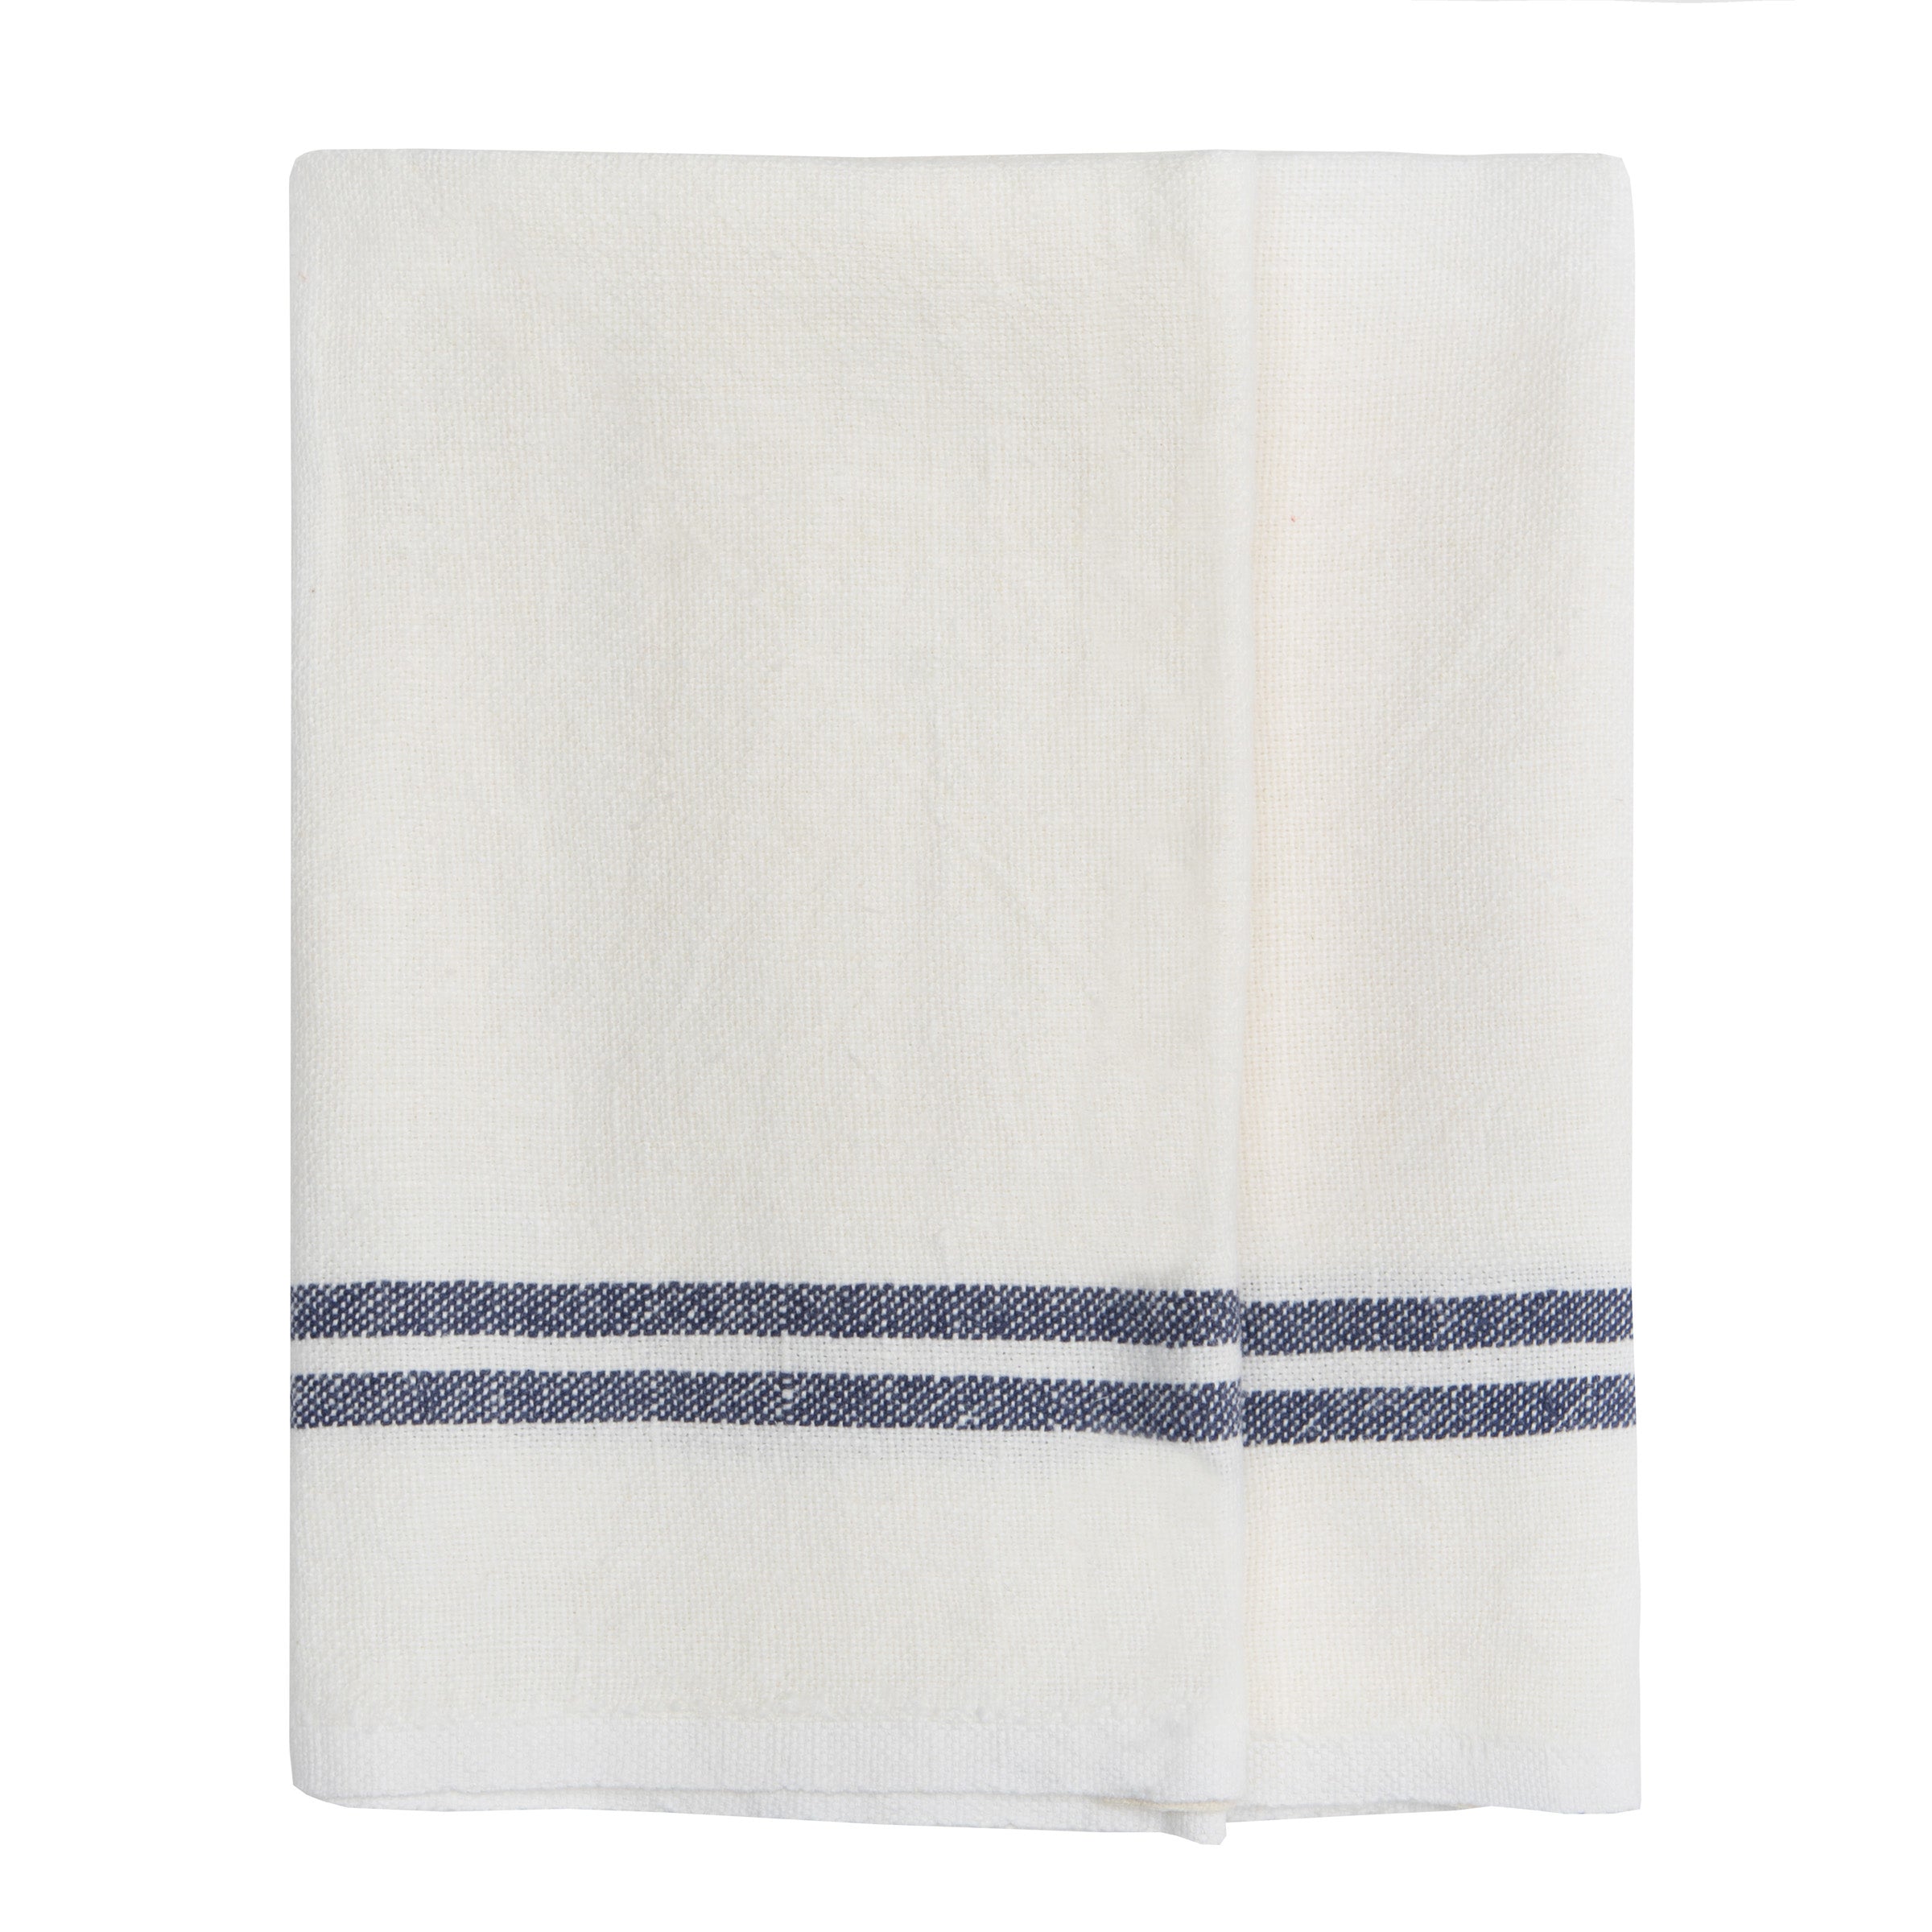 Linen Tea Towels Set of 10 Linen Dish Towels, Rusty, White, Natural Light  and Dusty Aqua Linen Kitchen Towels, Natural Linen Kitchen Towel 